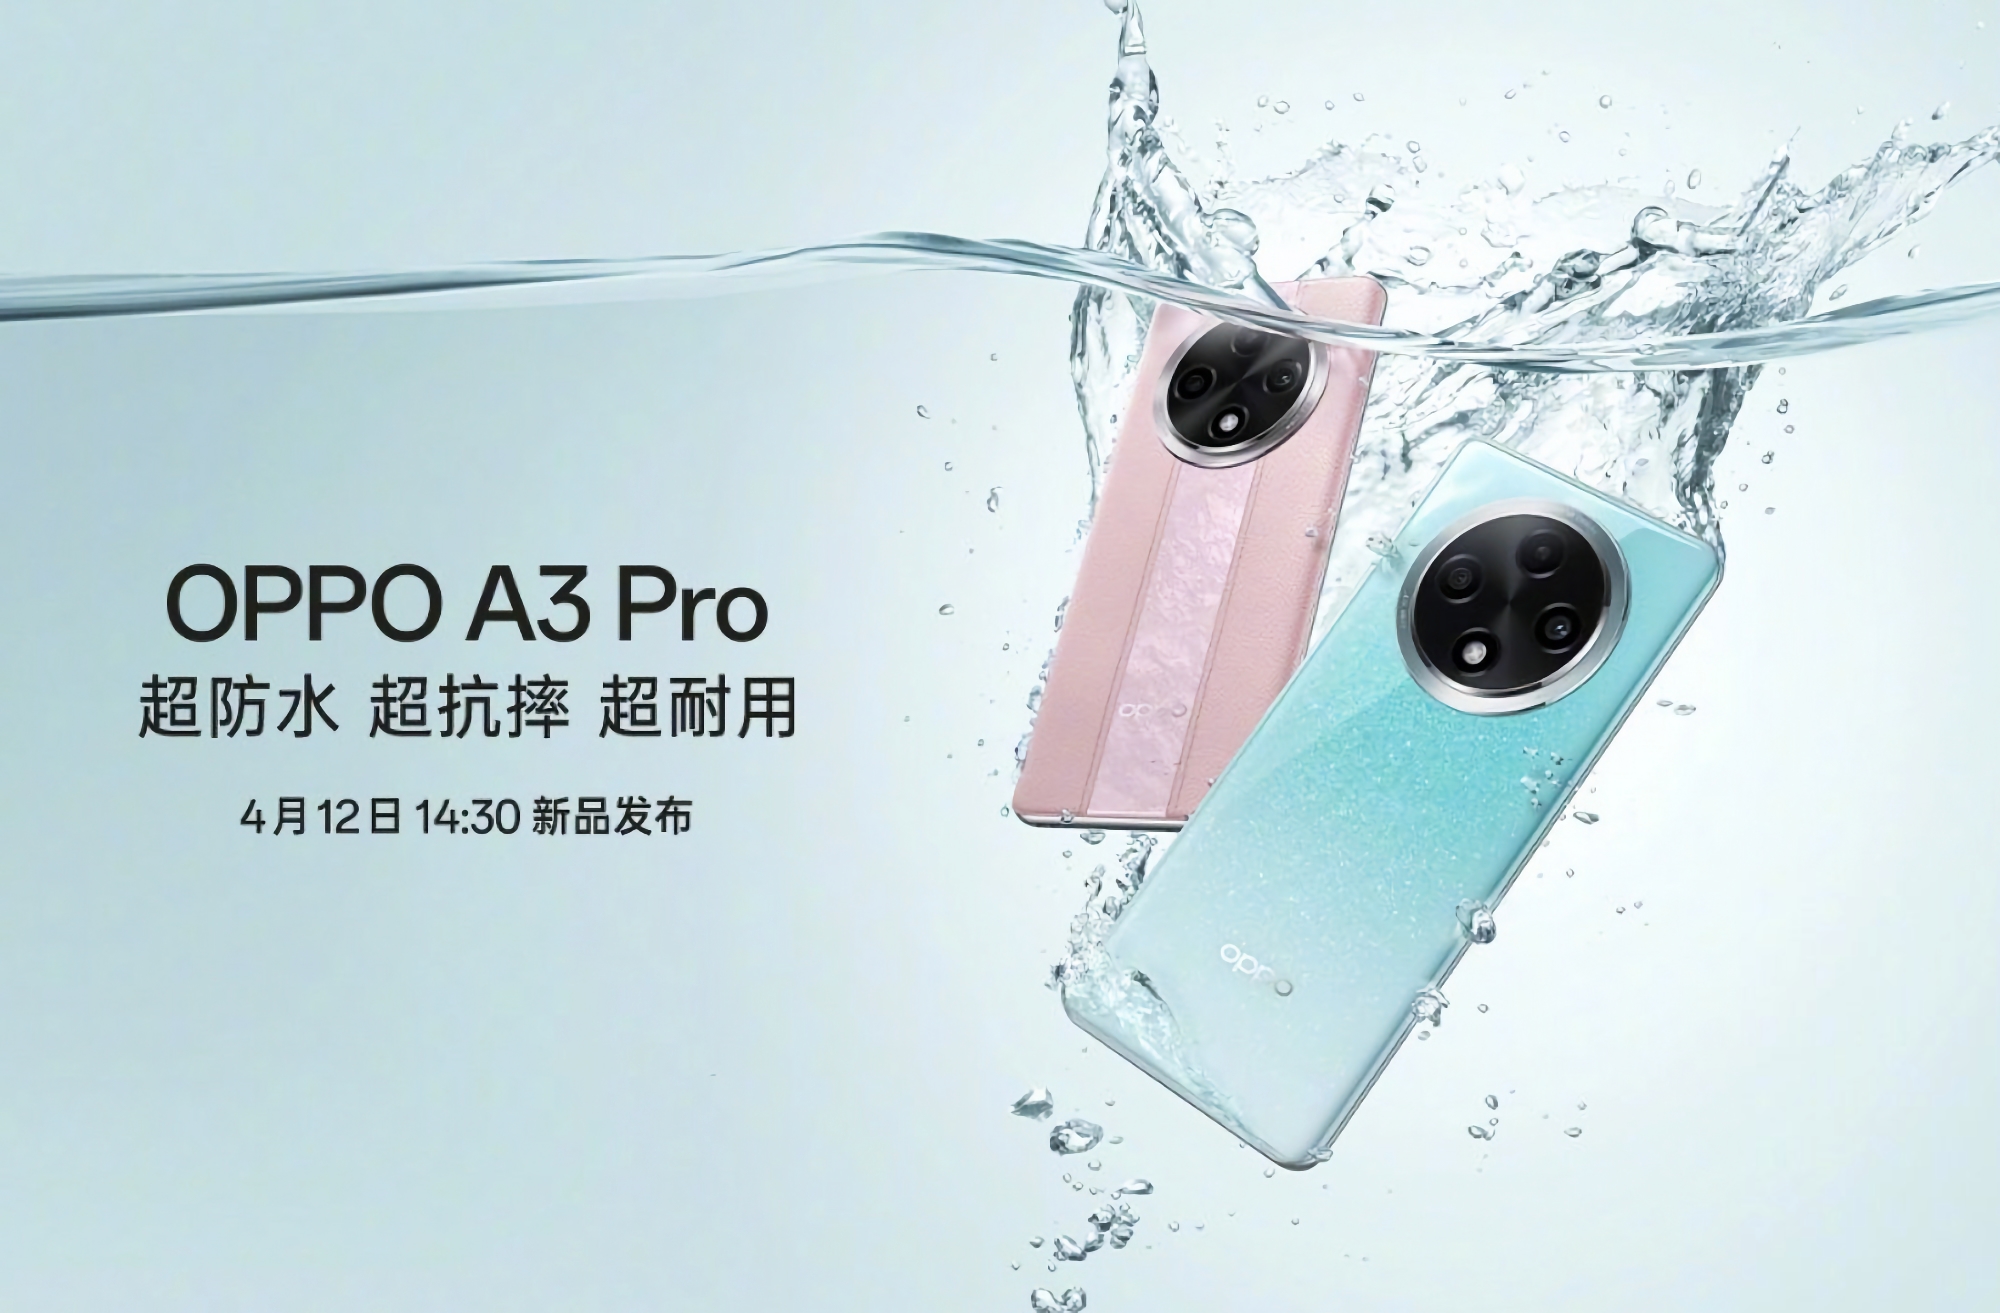 Nu är det officiellt: OPPO A3 Pro kommer att göra sin debut den 12 april